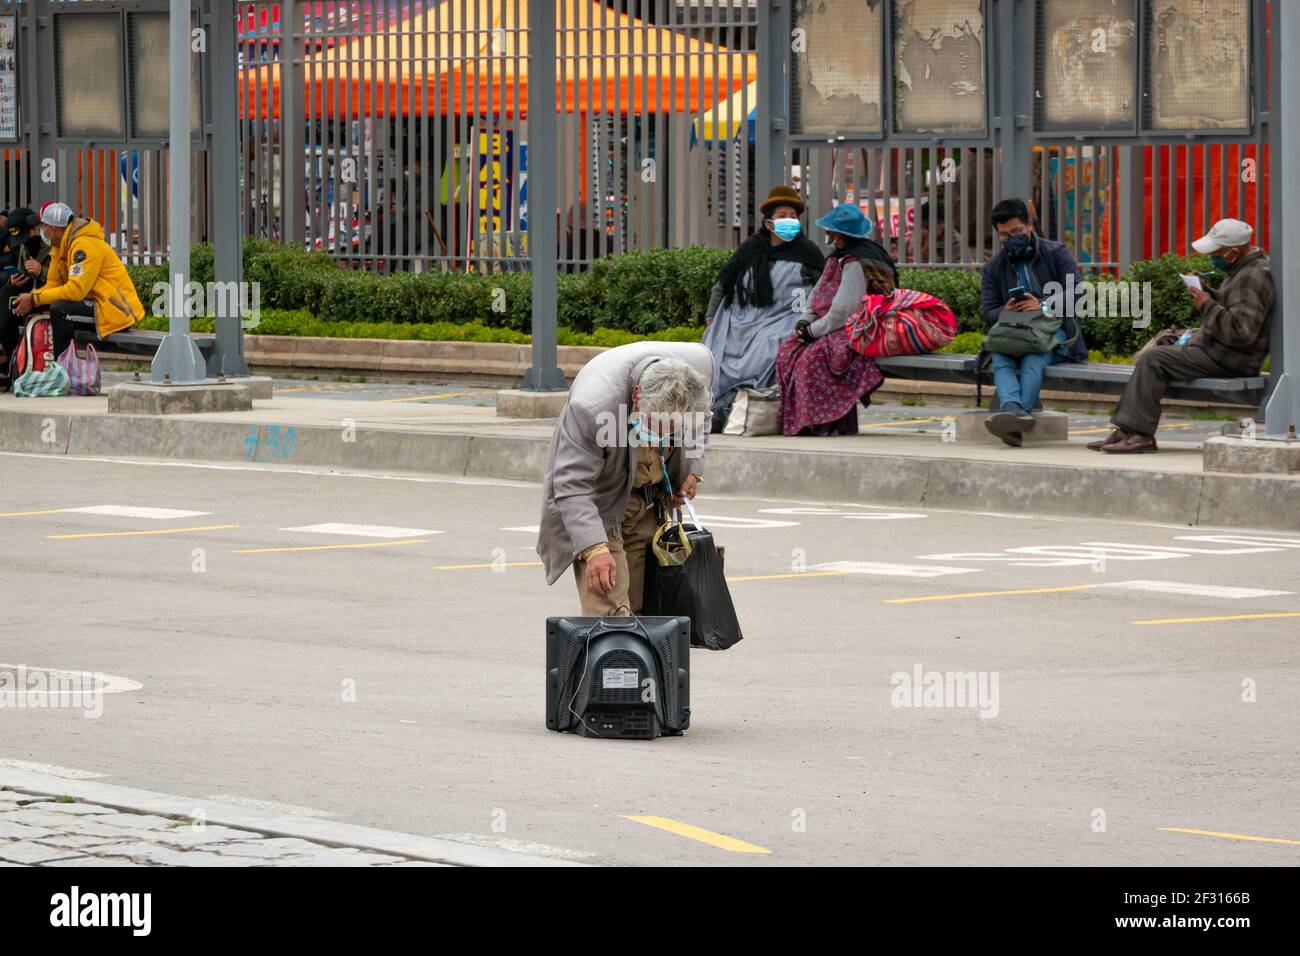 El Alto, la Paz, Bolivia - Febbraio 11 2021: L'uomo latino anziano che indossa una maschera dal Covid-19, sta portando un set televisivo antico e una borsa nell'Othe Foto Stock